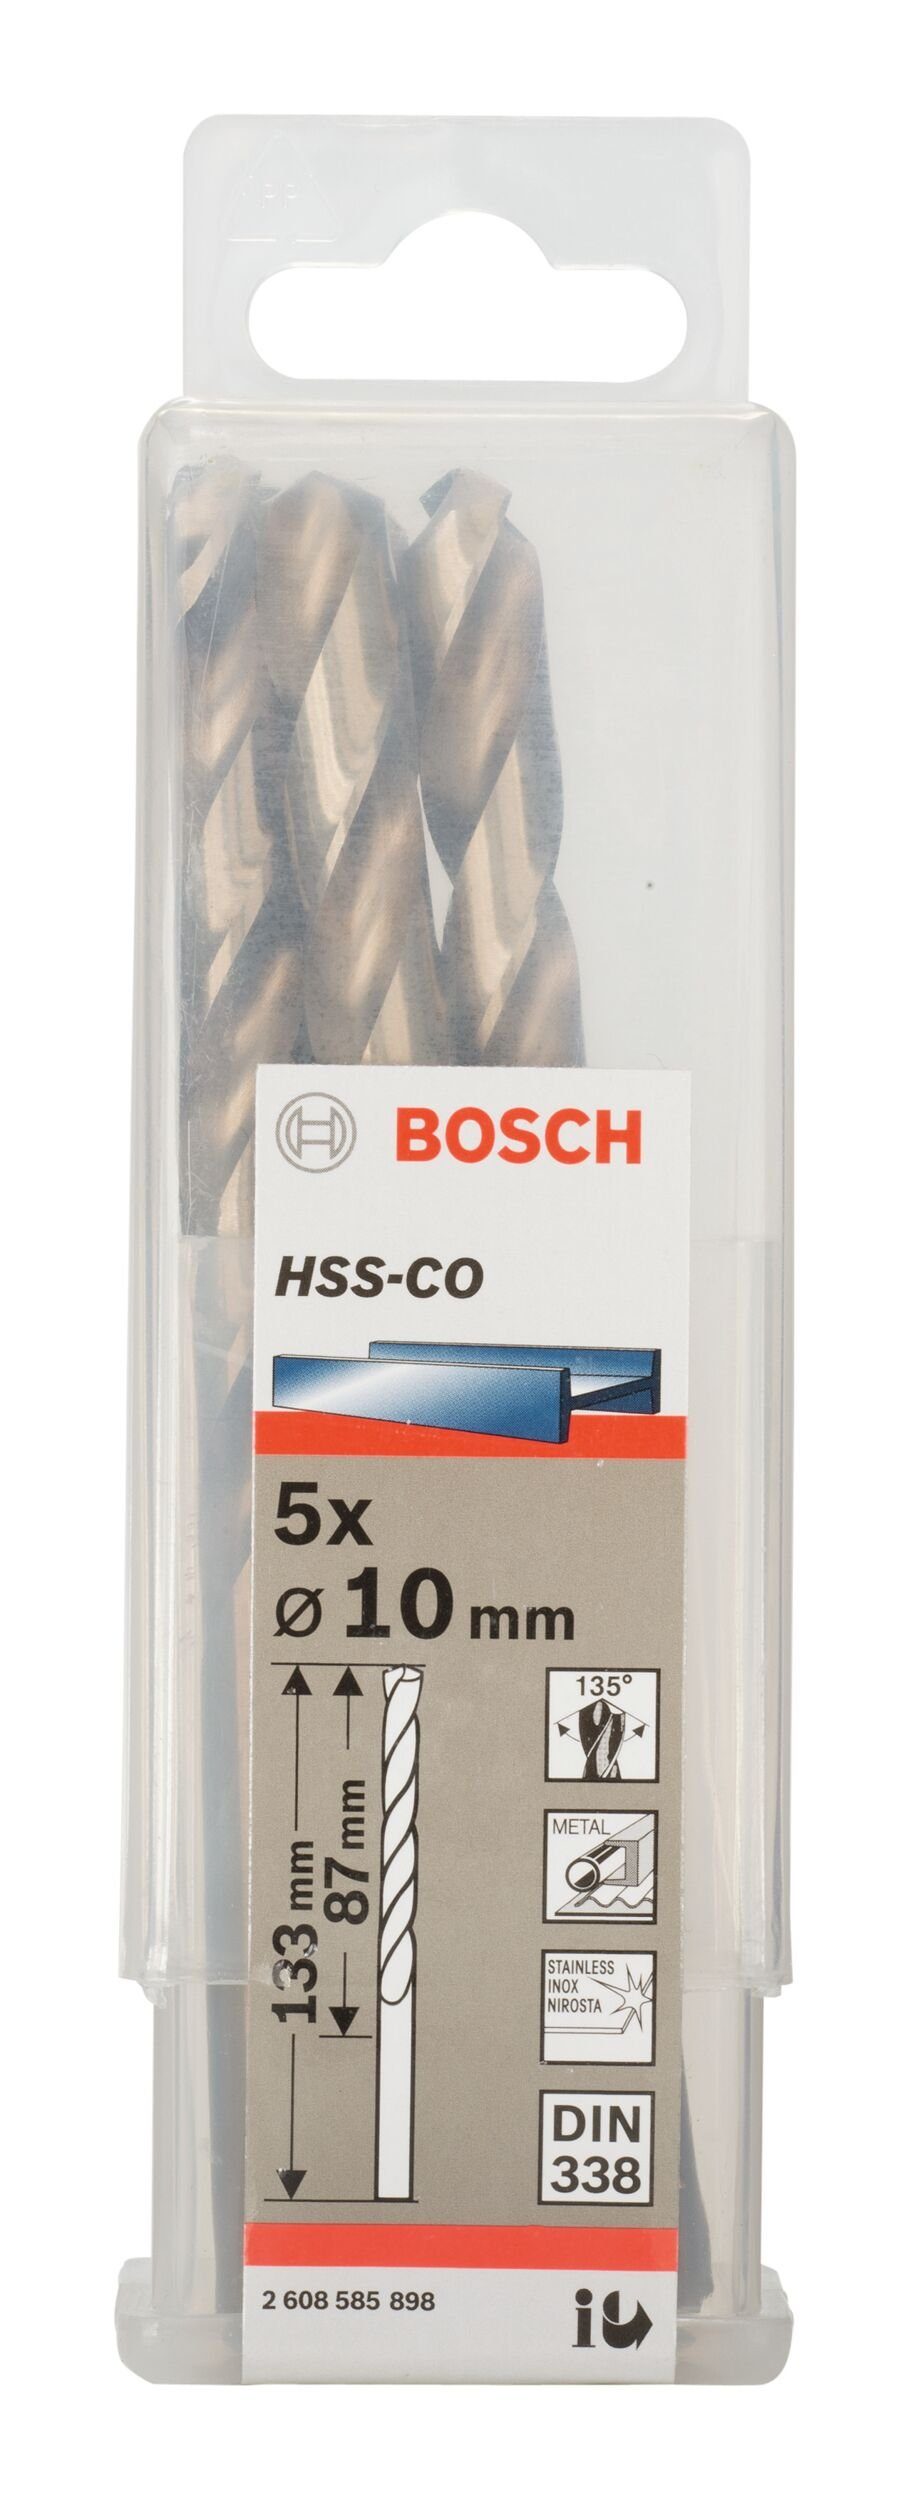 x (5 (DIN BOSCH 87 x - HSS-Co Metallbohrer, mm 10 338) Stück), - 133 5er-Pack